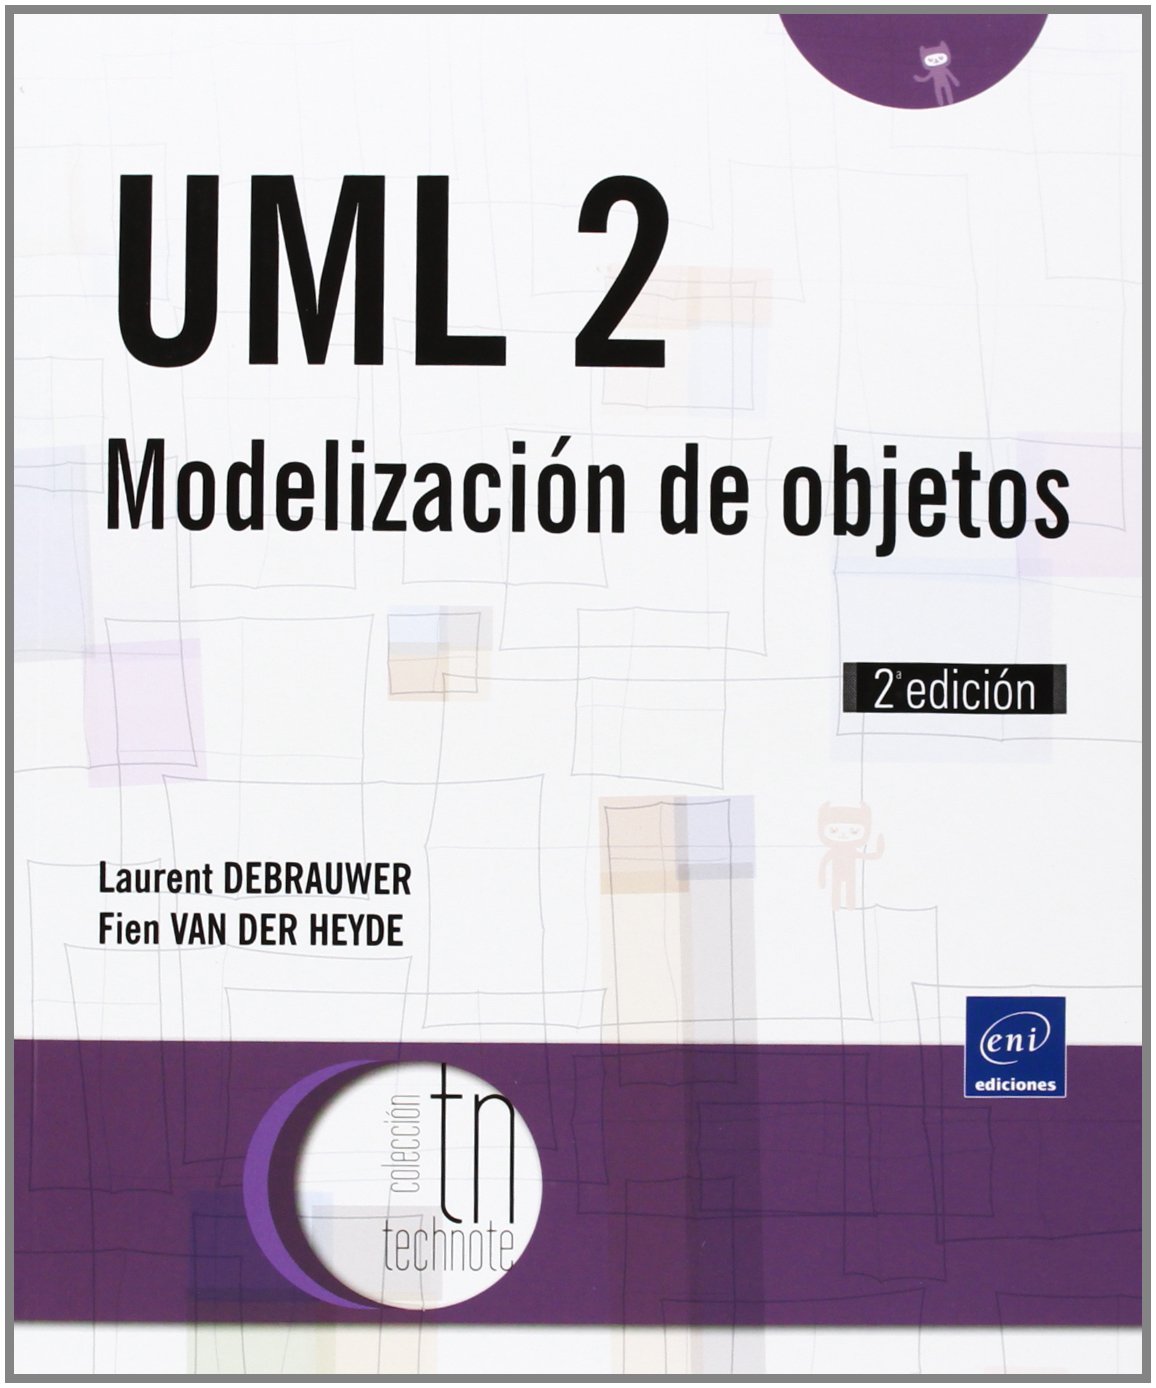 UML 2 MODELIZACION DE OBJETOS